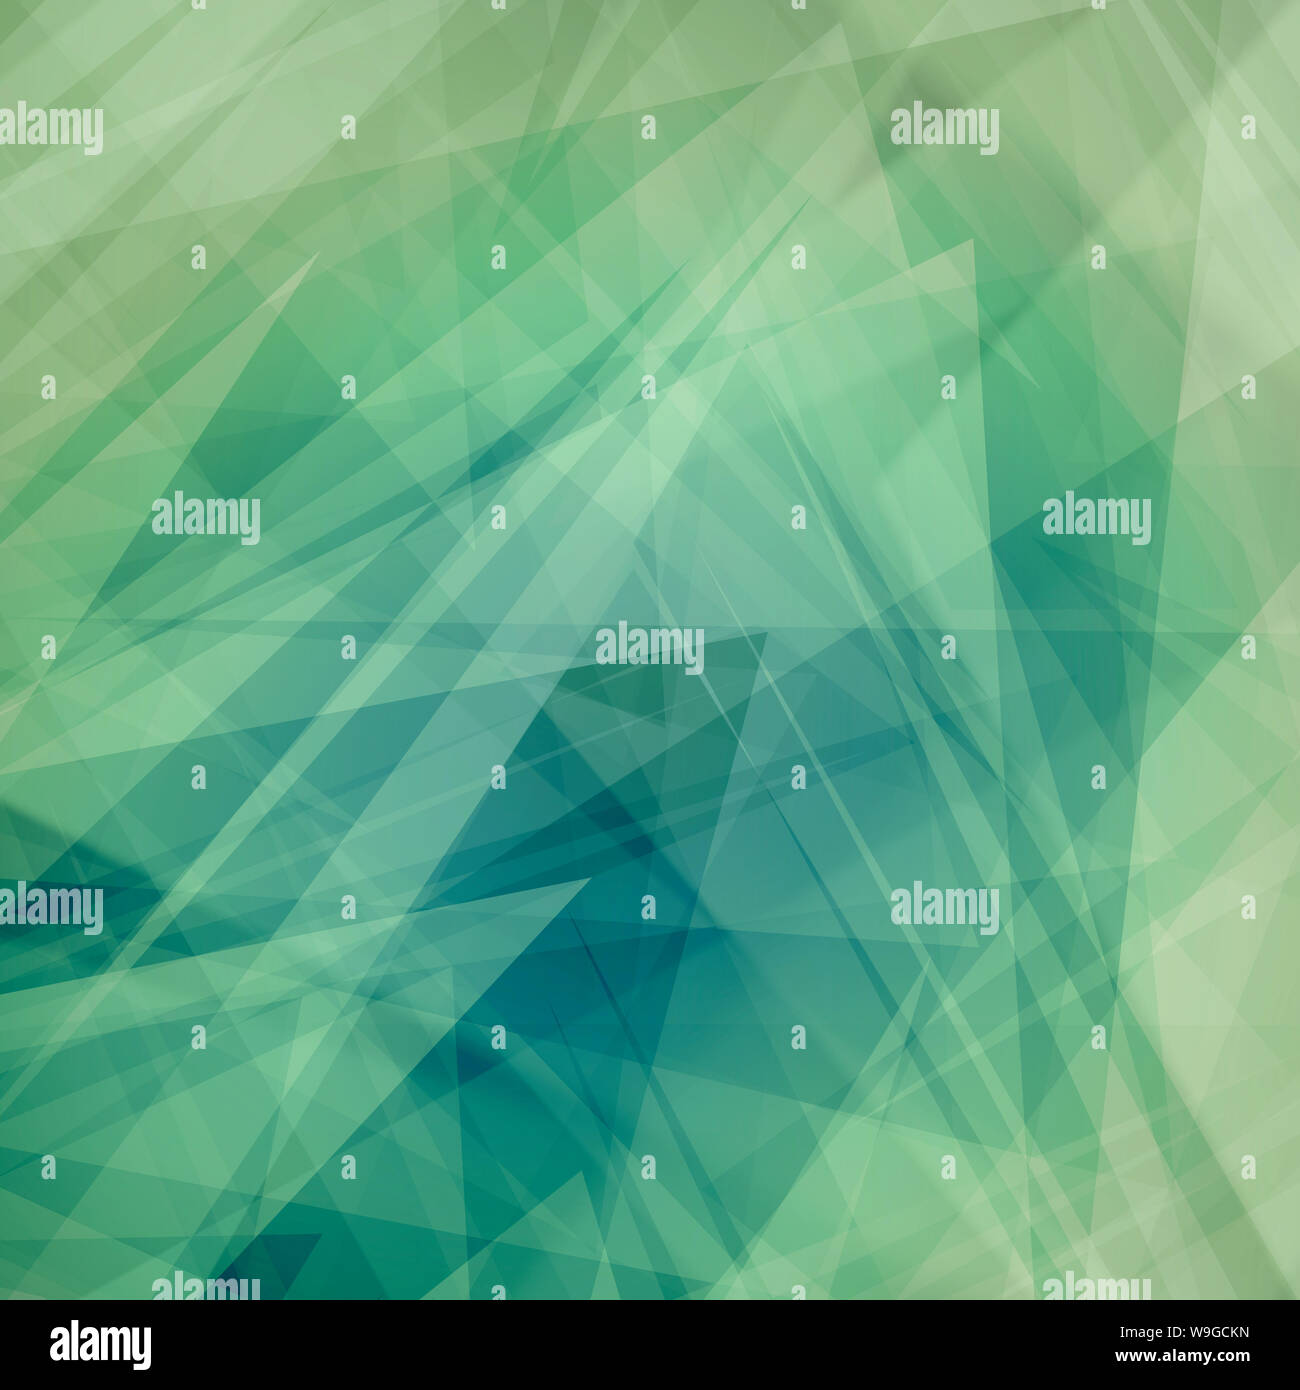 Zusammenfassung Hintergrund mit Schichten von Dreiecken, Polygone, Streifen und zufälligen Formen der Weiß blauen und grünen Farben in der modernen Kunst Design Stockfoto